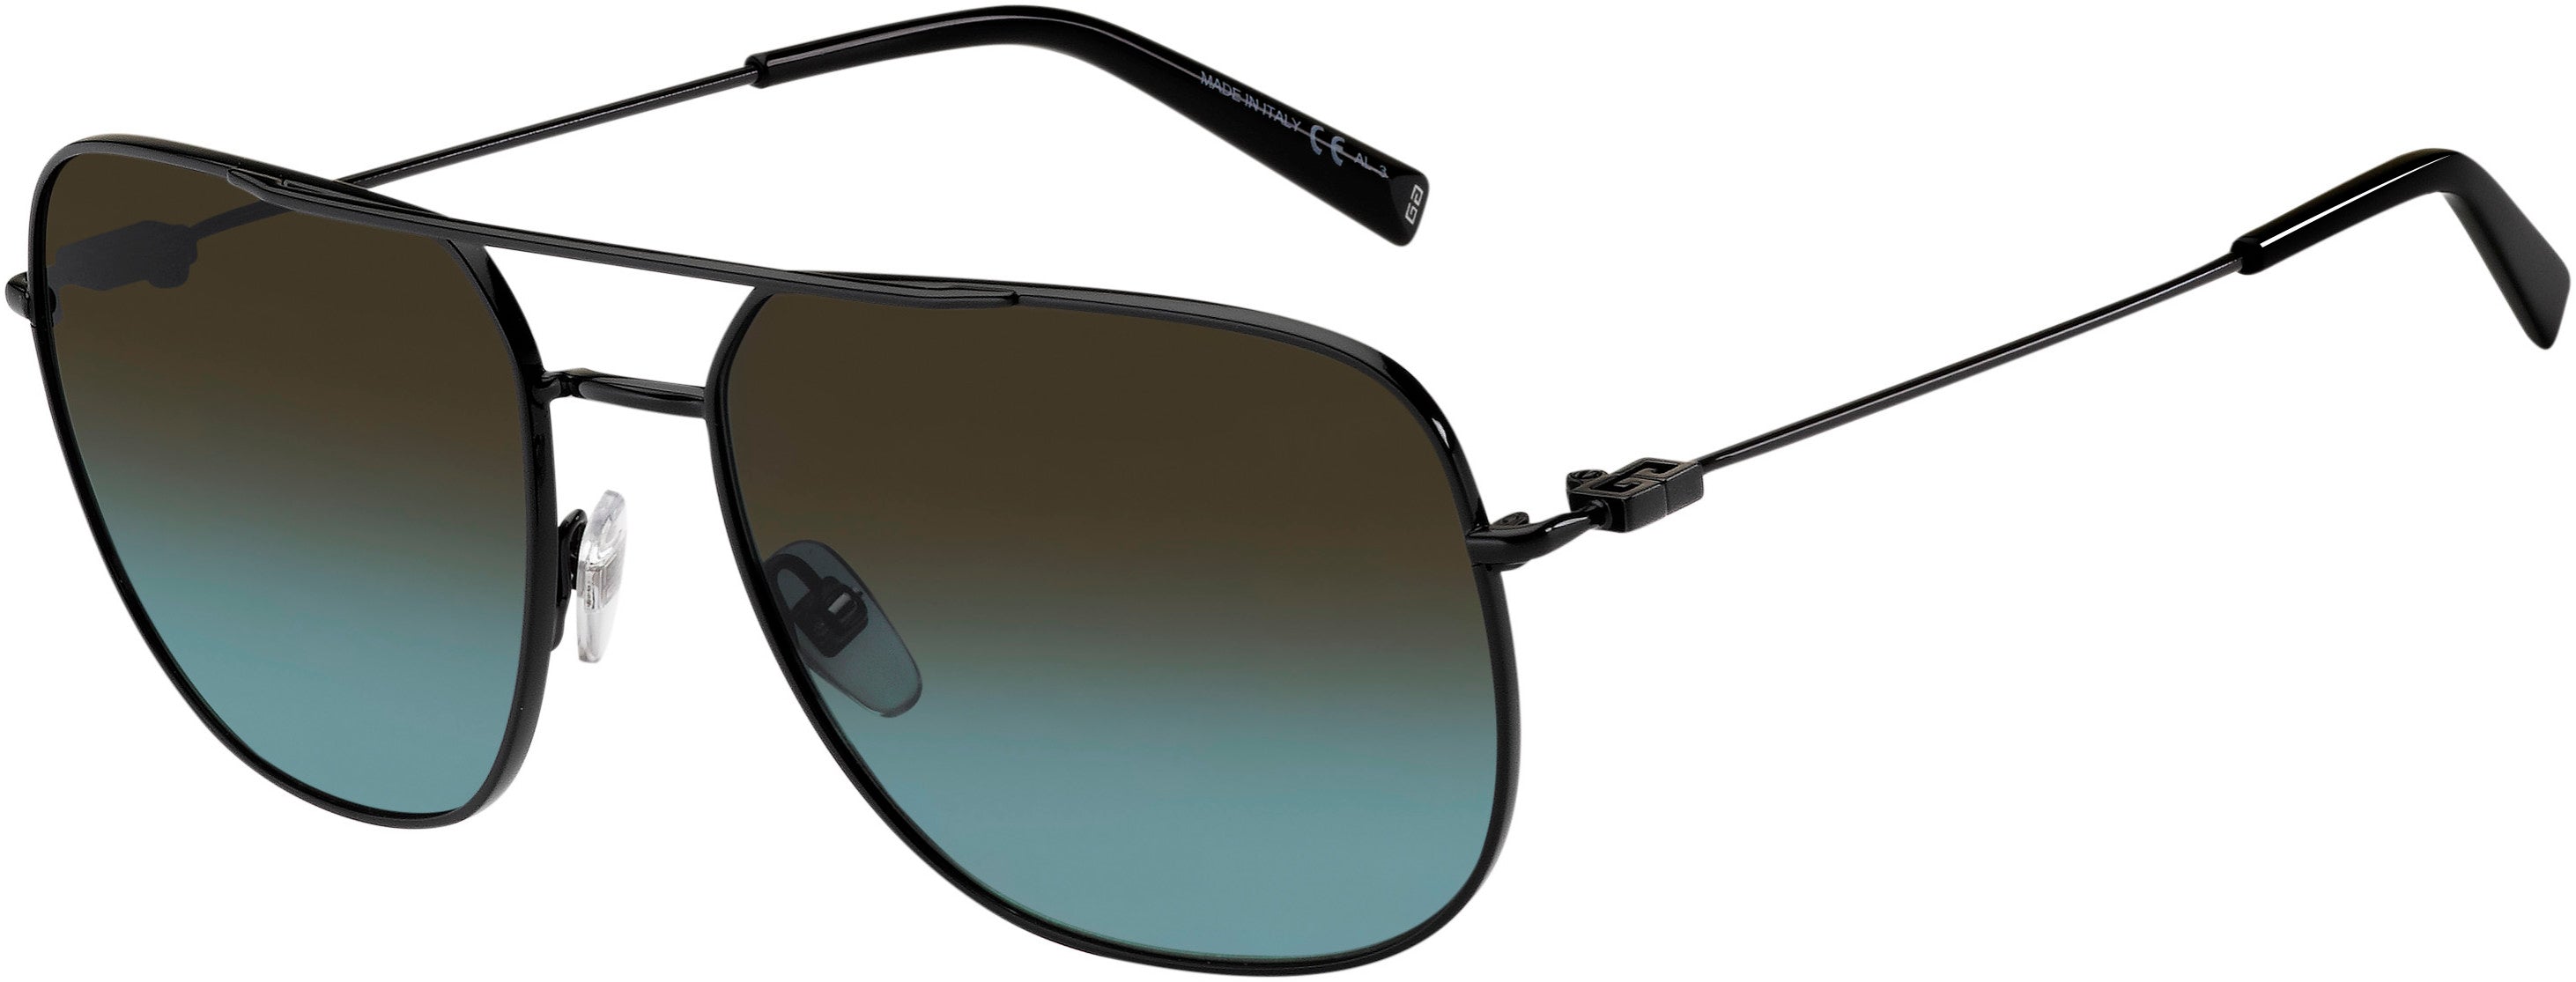  Givenchy 7195/S Aviator Sunglasses 0807-0807  Black (I7 Gray Shaded Petrol)